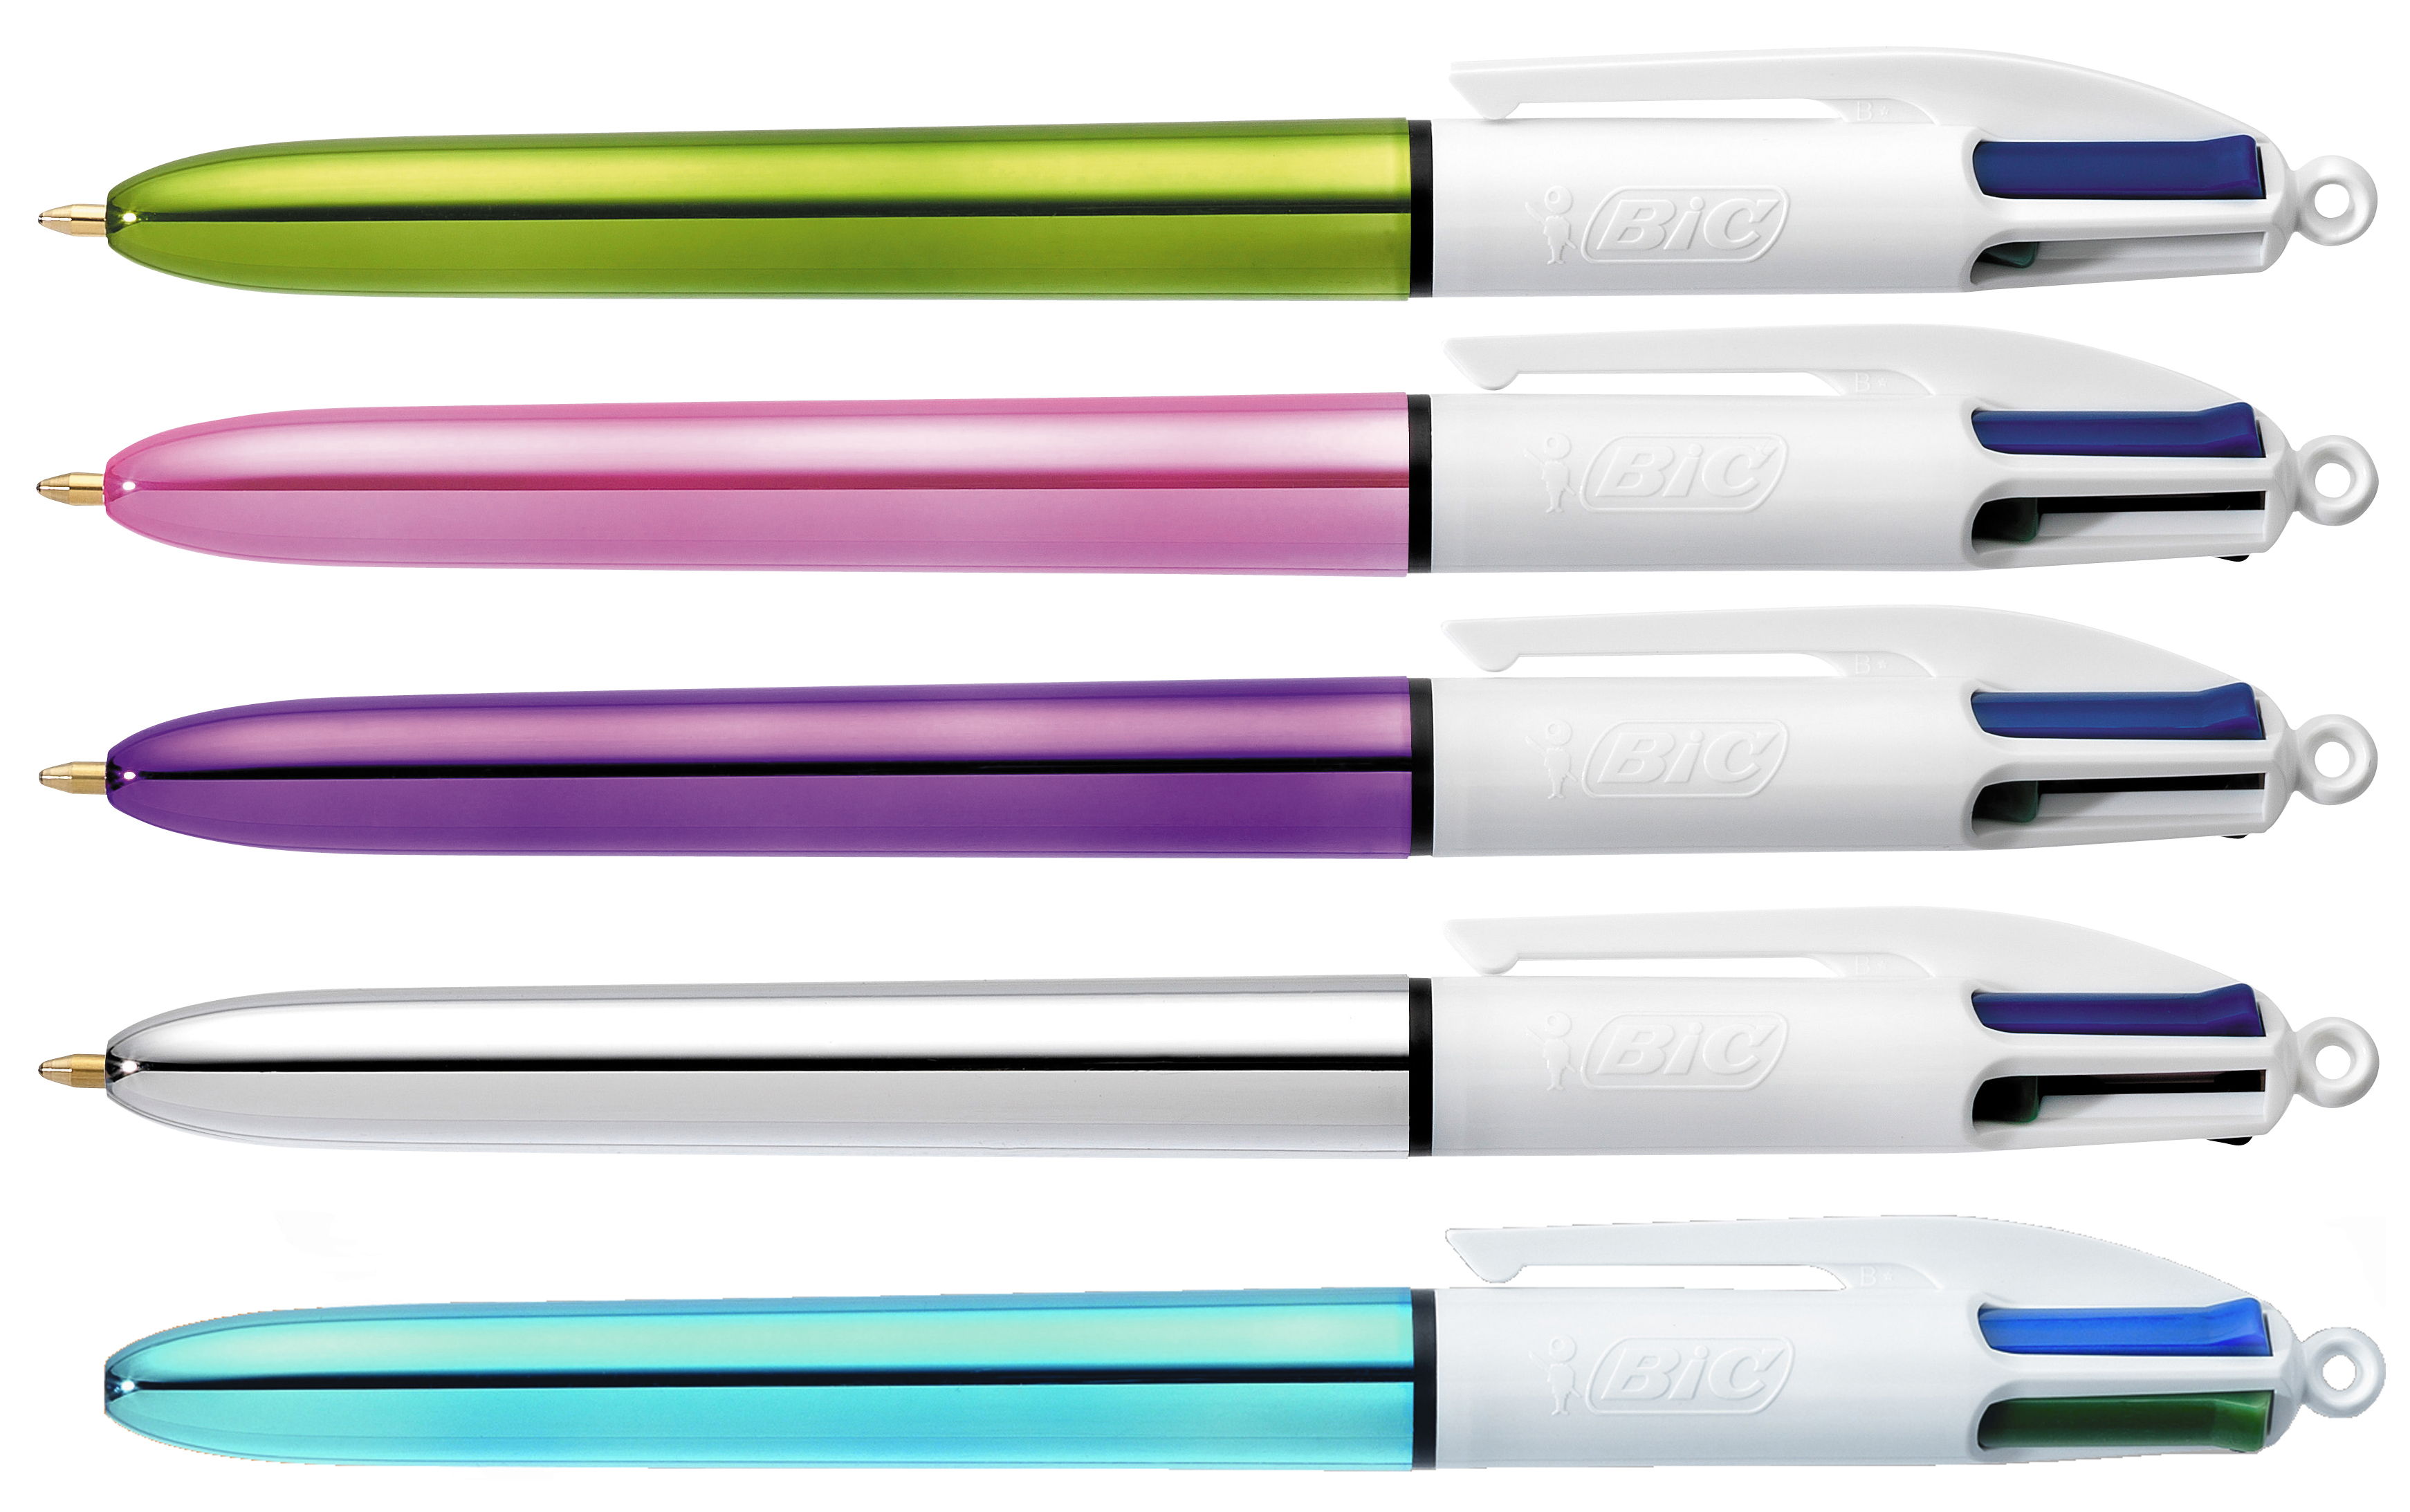 BIC Kugelschreiber Shine 1mm 902128 4-farbig, 20 Stück